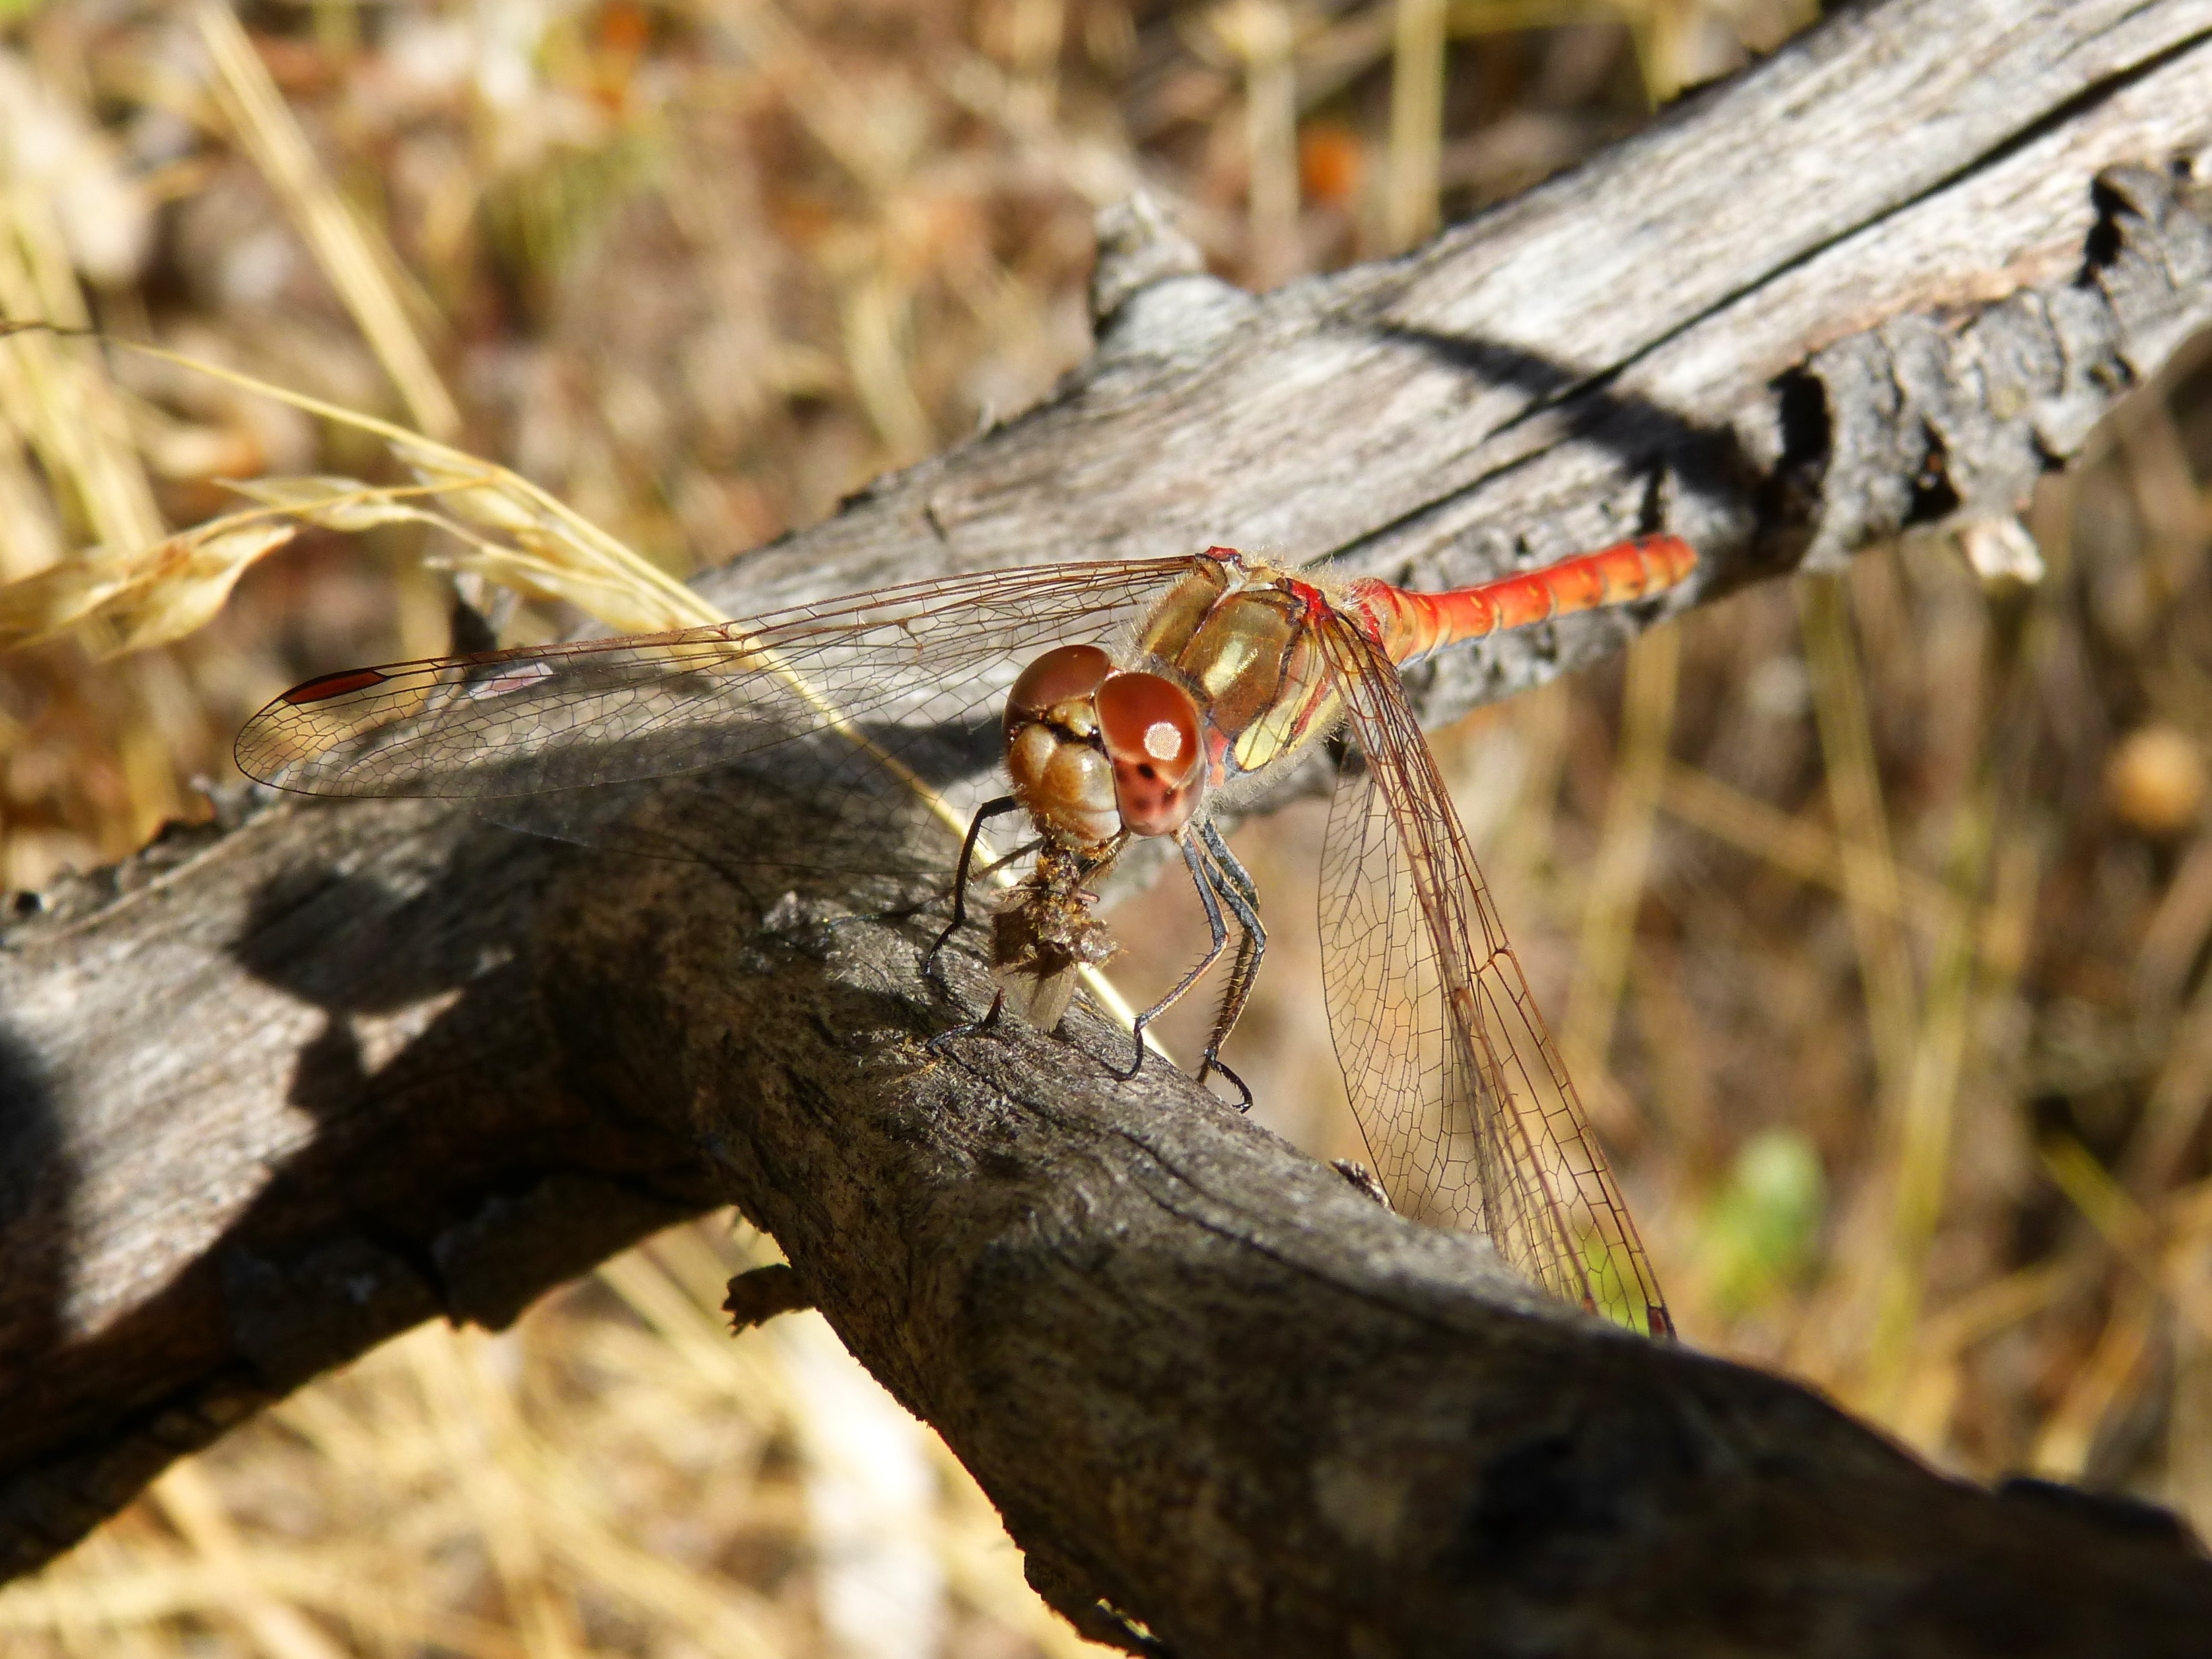 needham's skimmer dragonfly